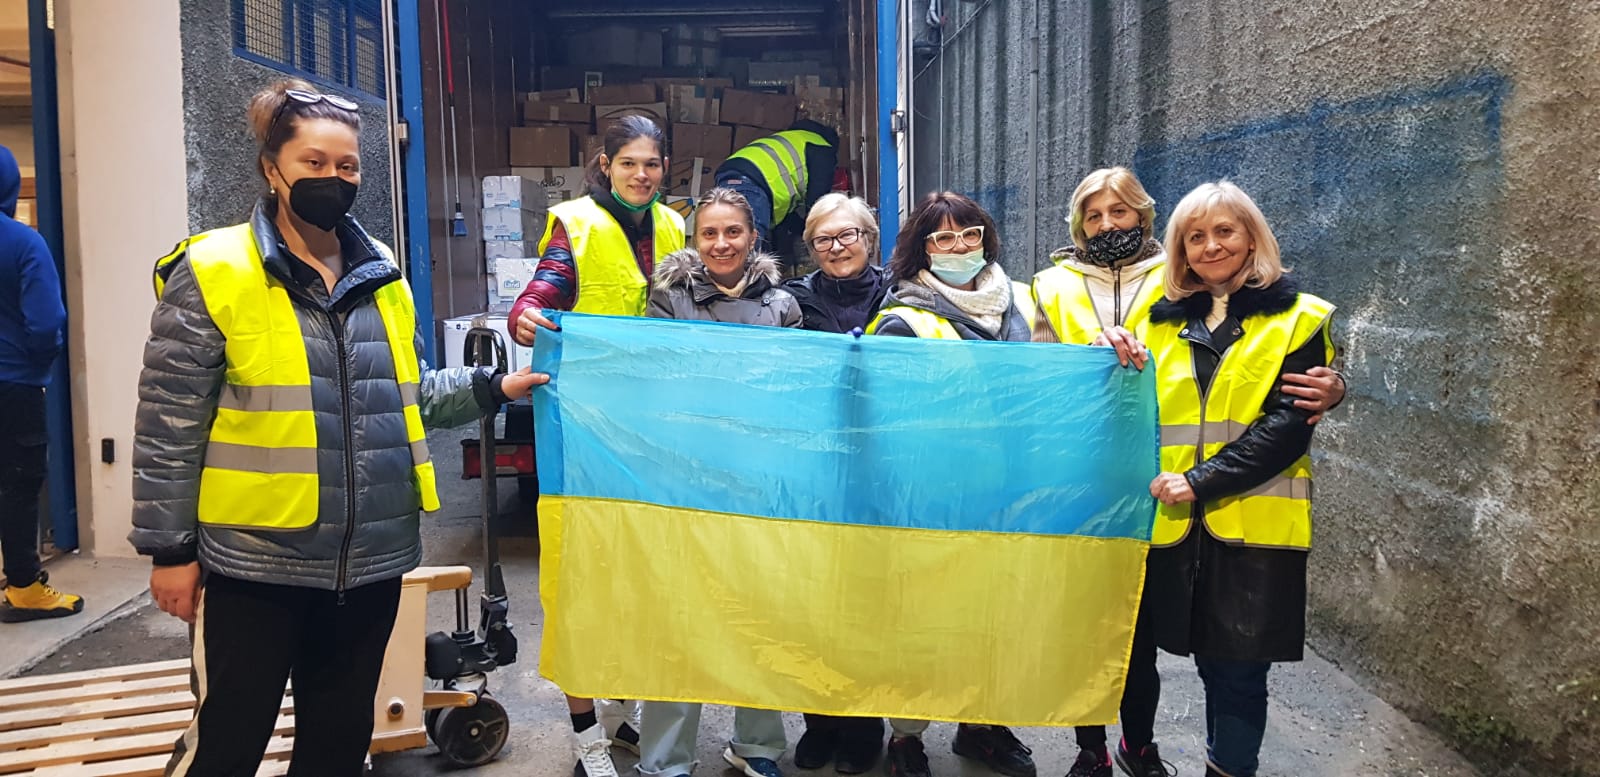 Emergenza Ucraina: il punto di raccolta in via Galimberti ad Alessandria